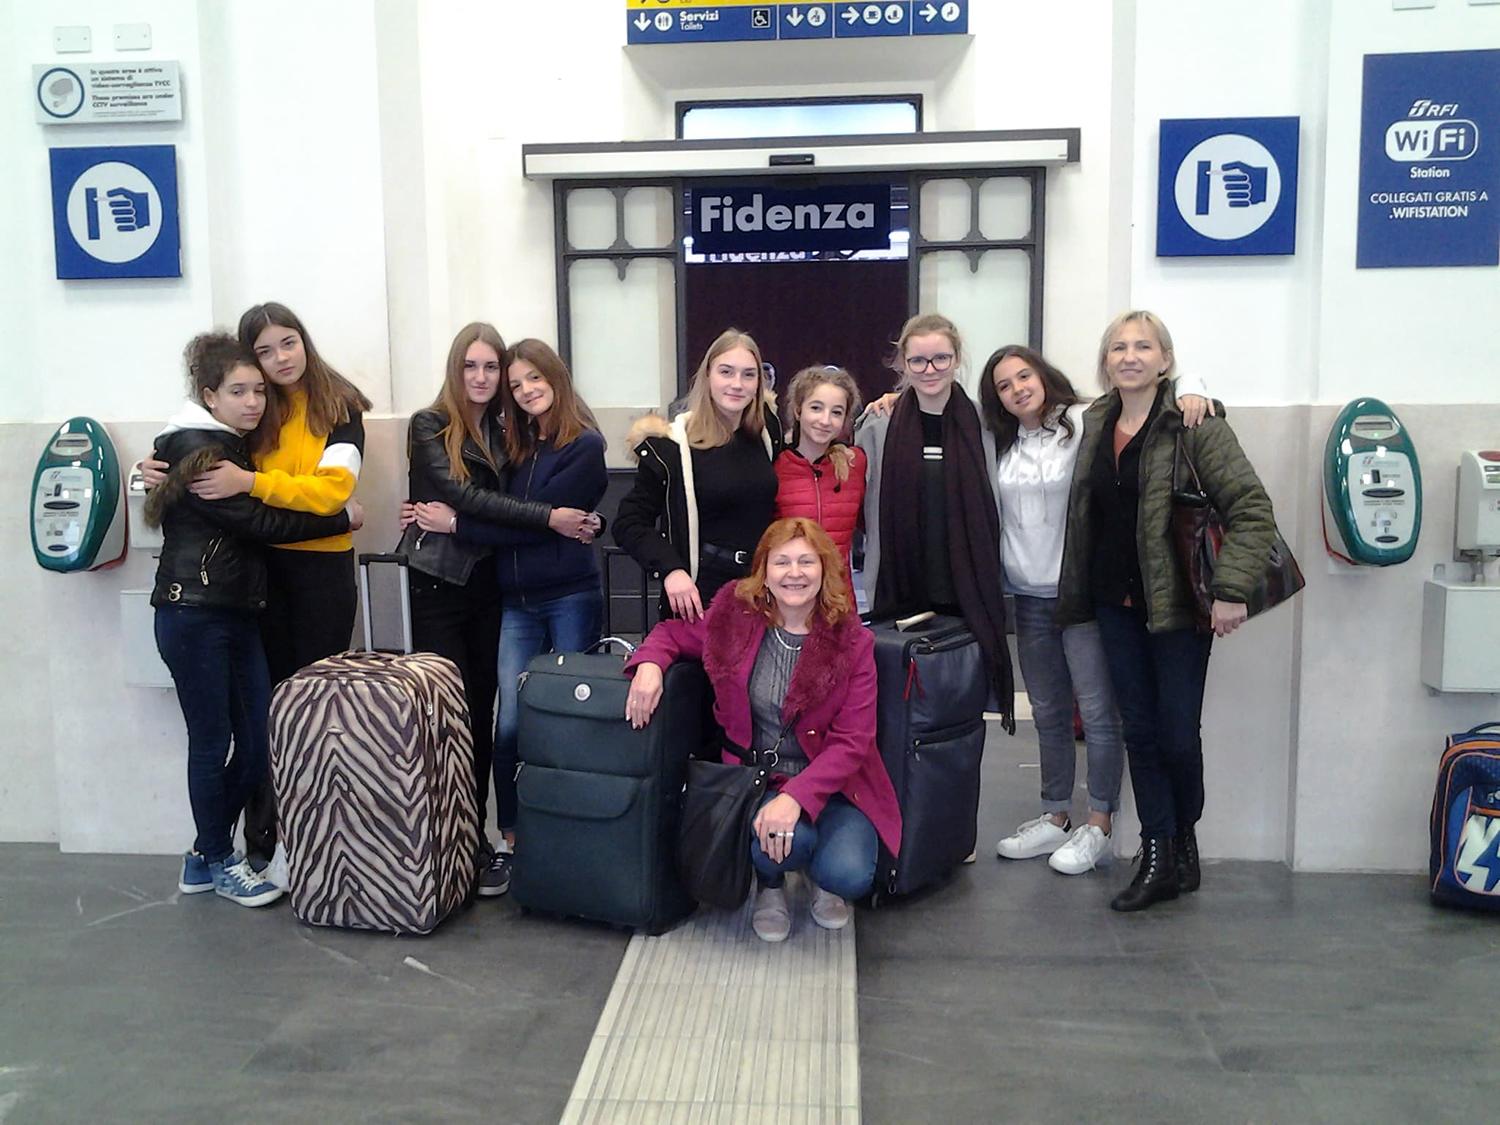 Projekto dalyvių grupė lankėsi Italijoje / Buvo labai sunku atsisveikinti su draugais tapusiais žmonėmis – traukinių stotyje verkė visi.